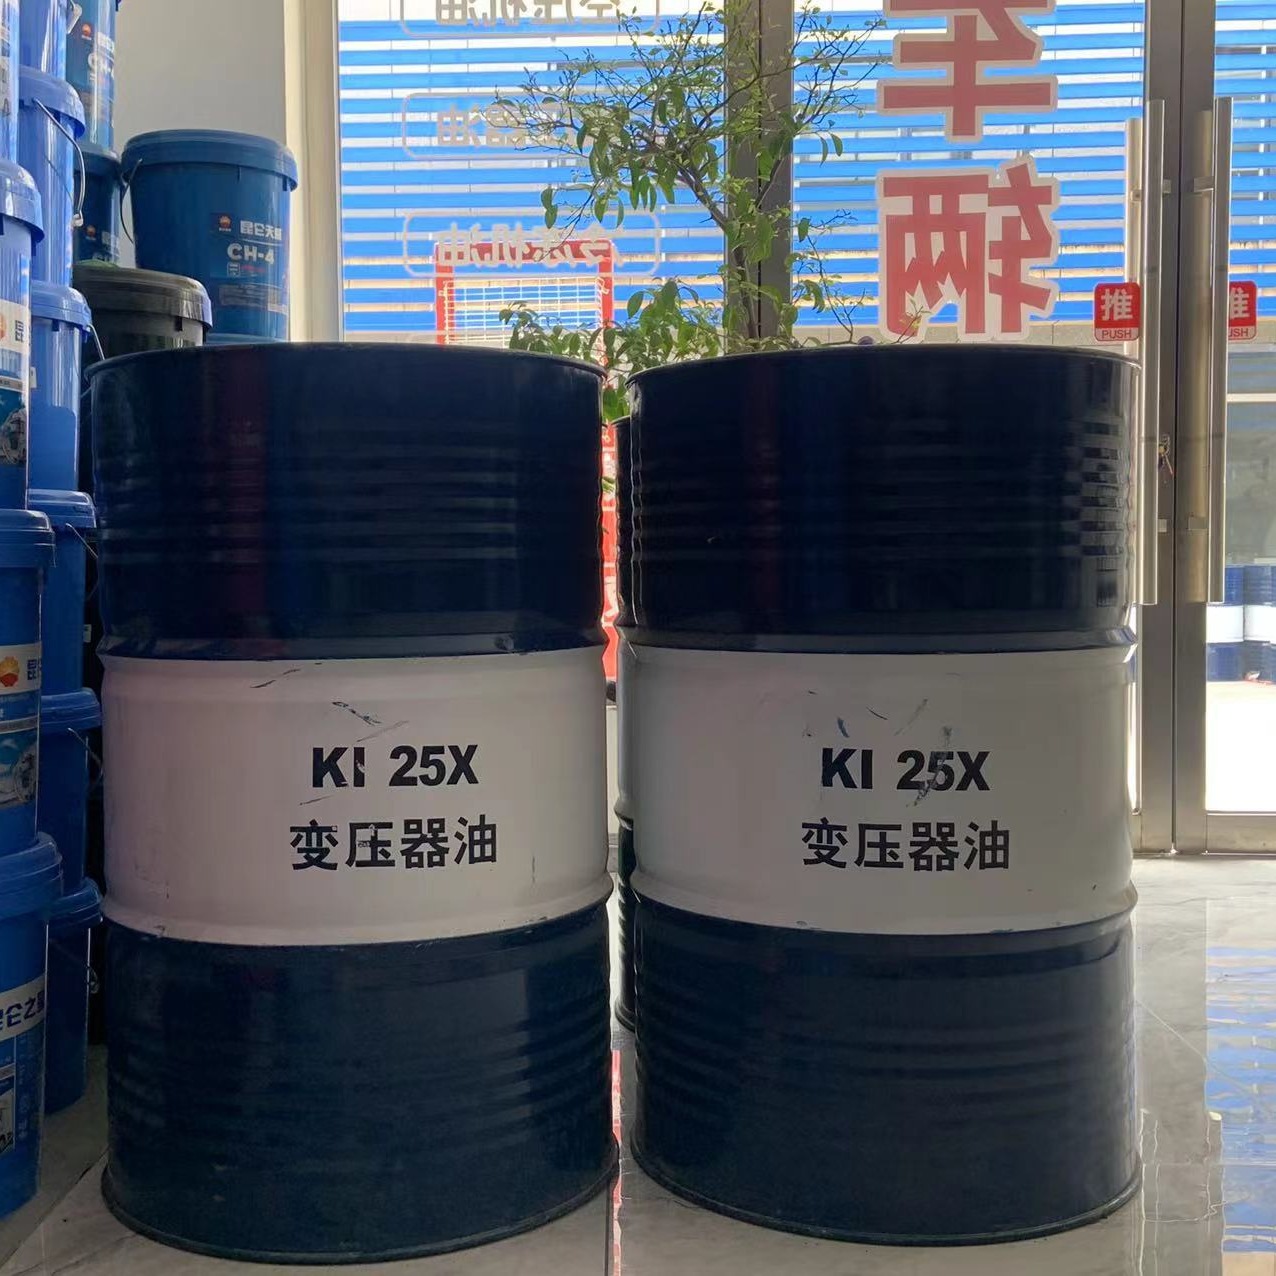 昆仑润滑油一级代理商 供应昆仑变压器油KI25X 170kg 昆仑25号变压器油 原装正品 质量保障 库存充足 发货及时